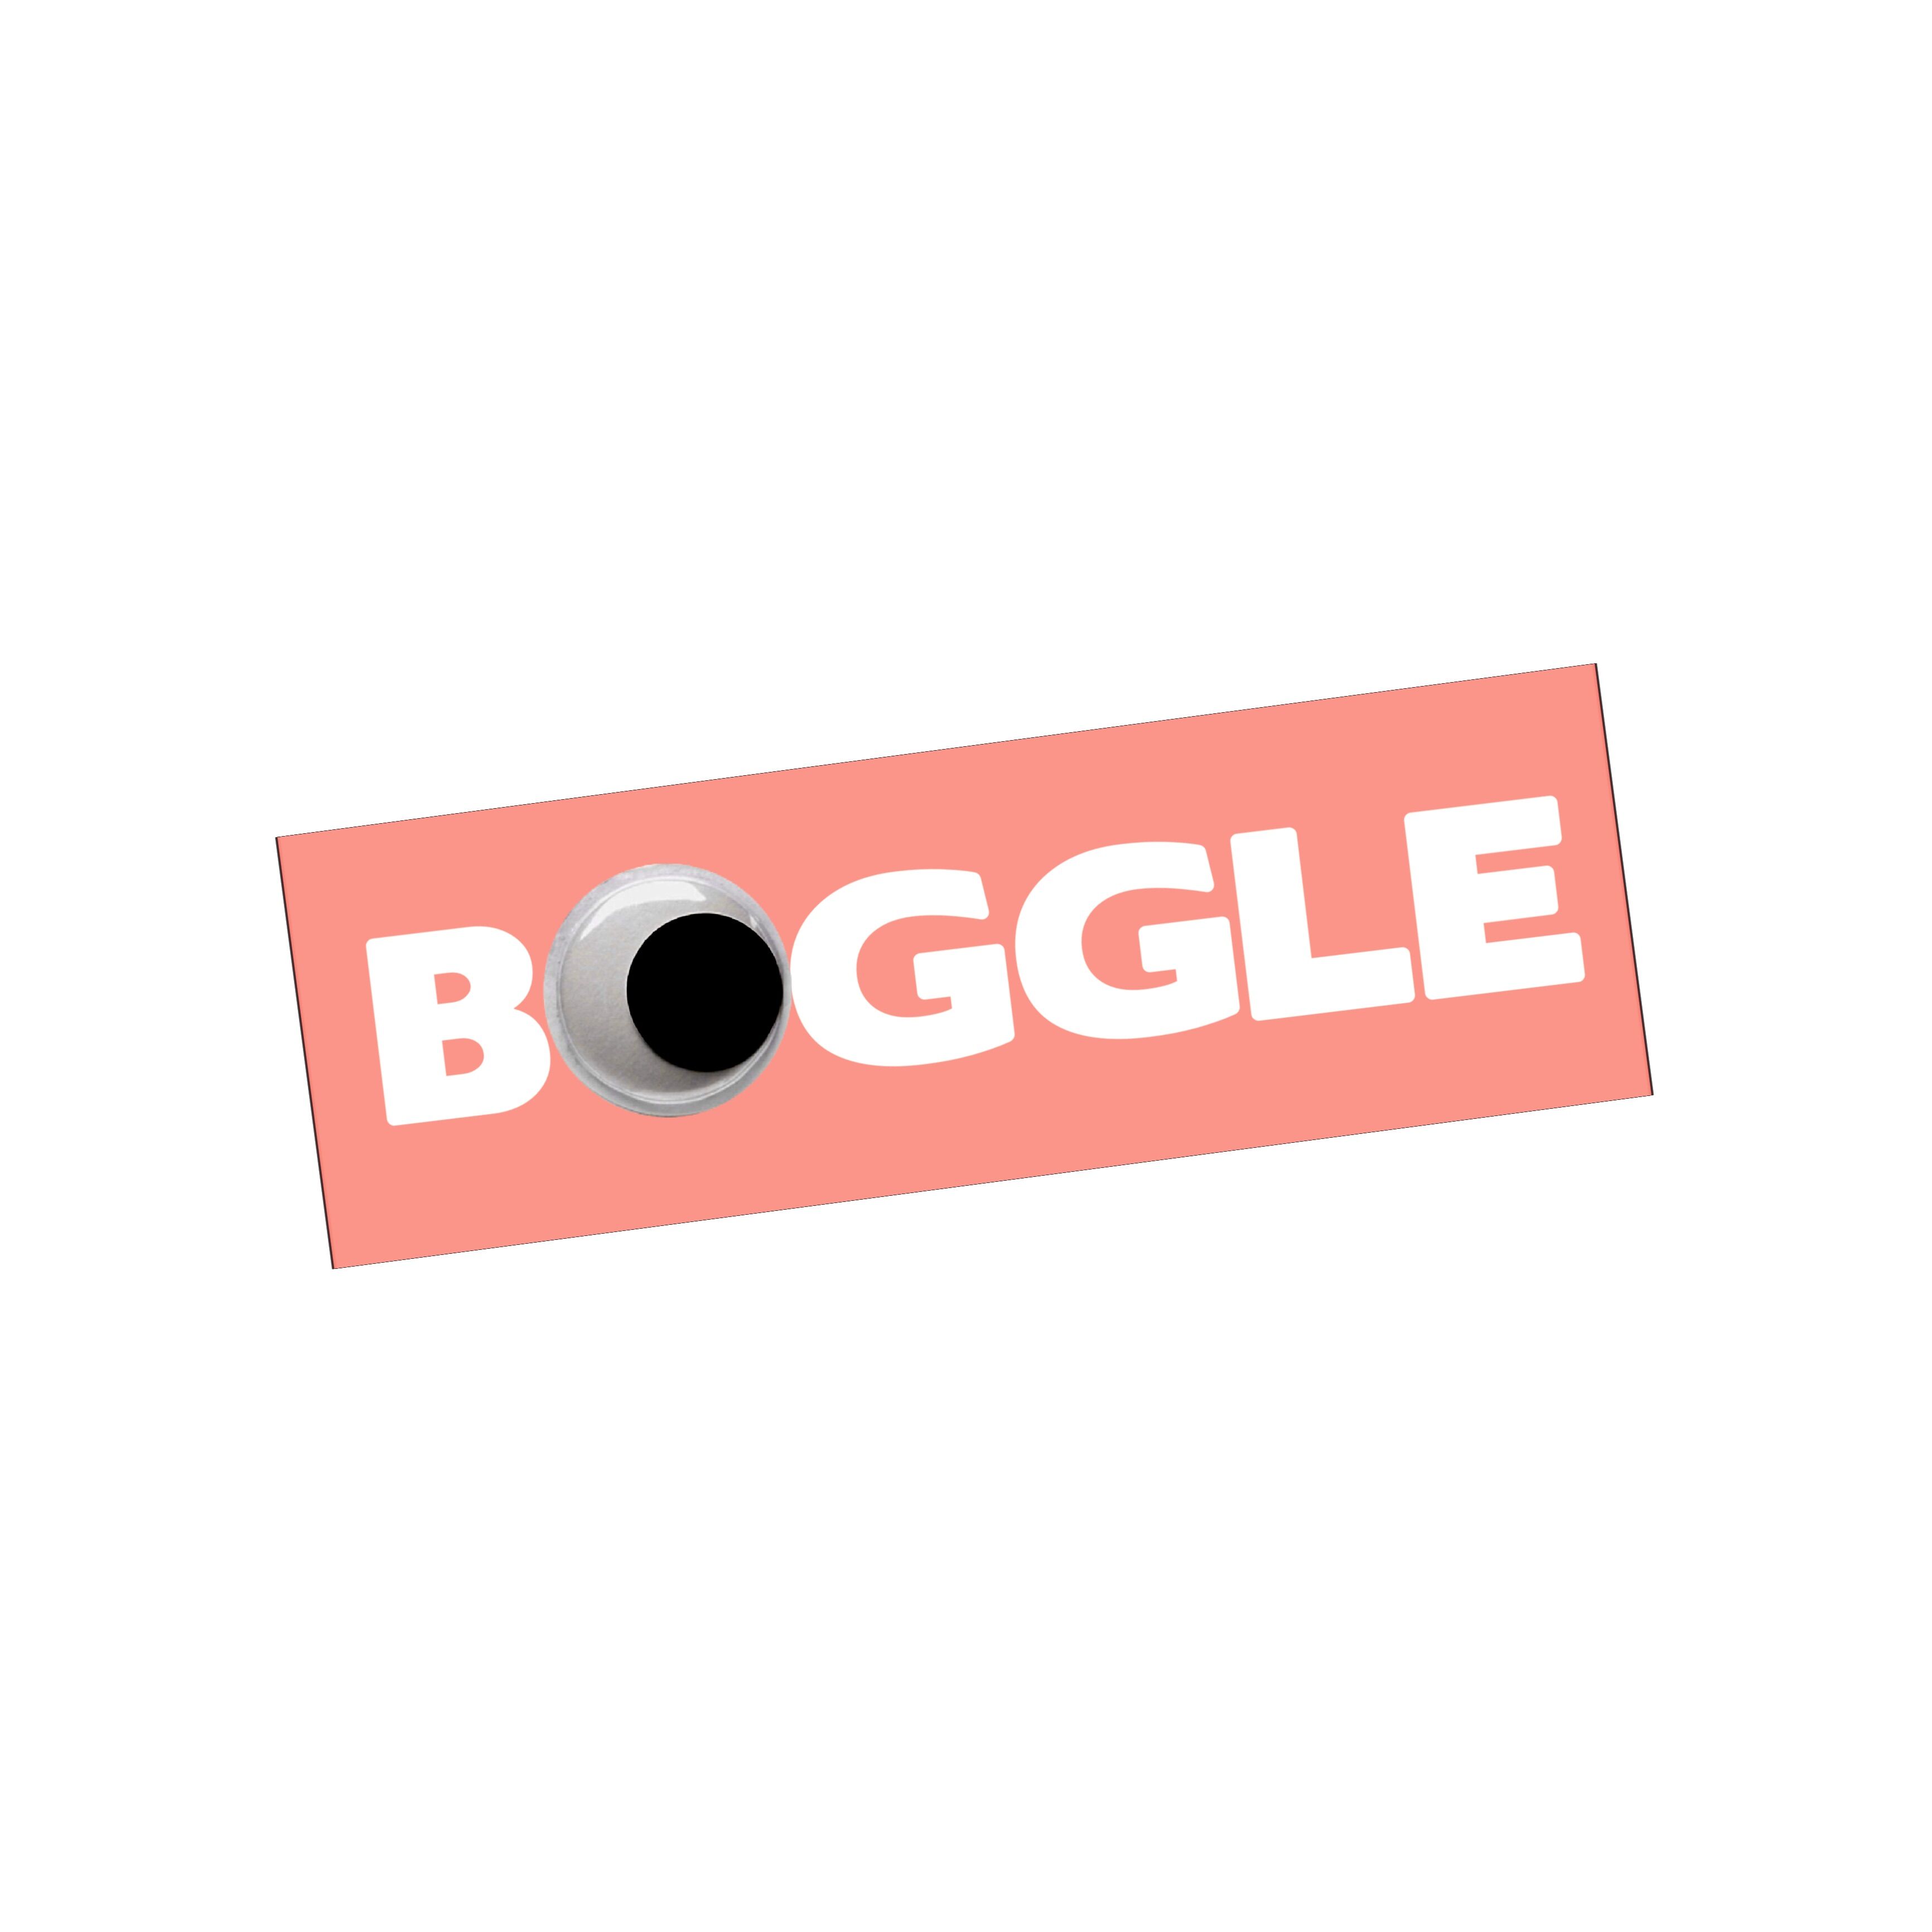 Boggle - Wikipedia